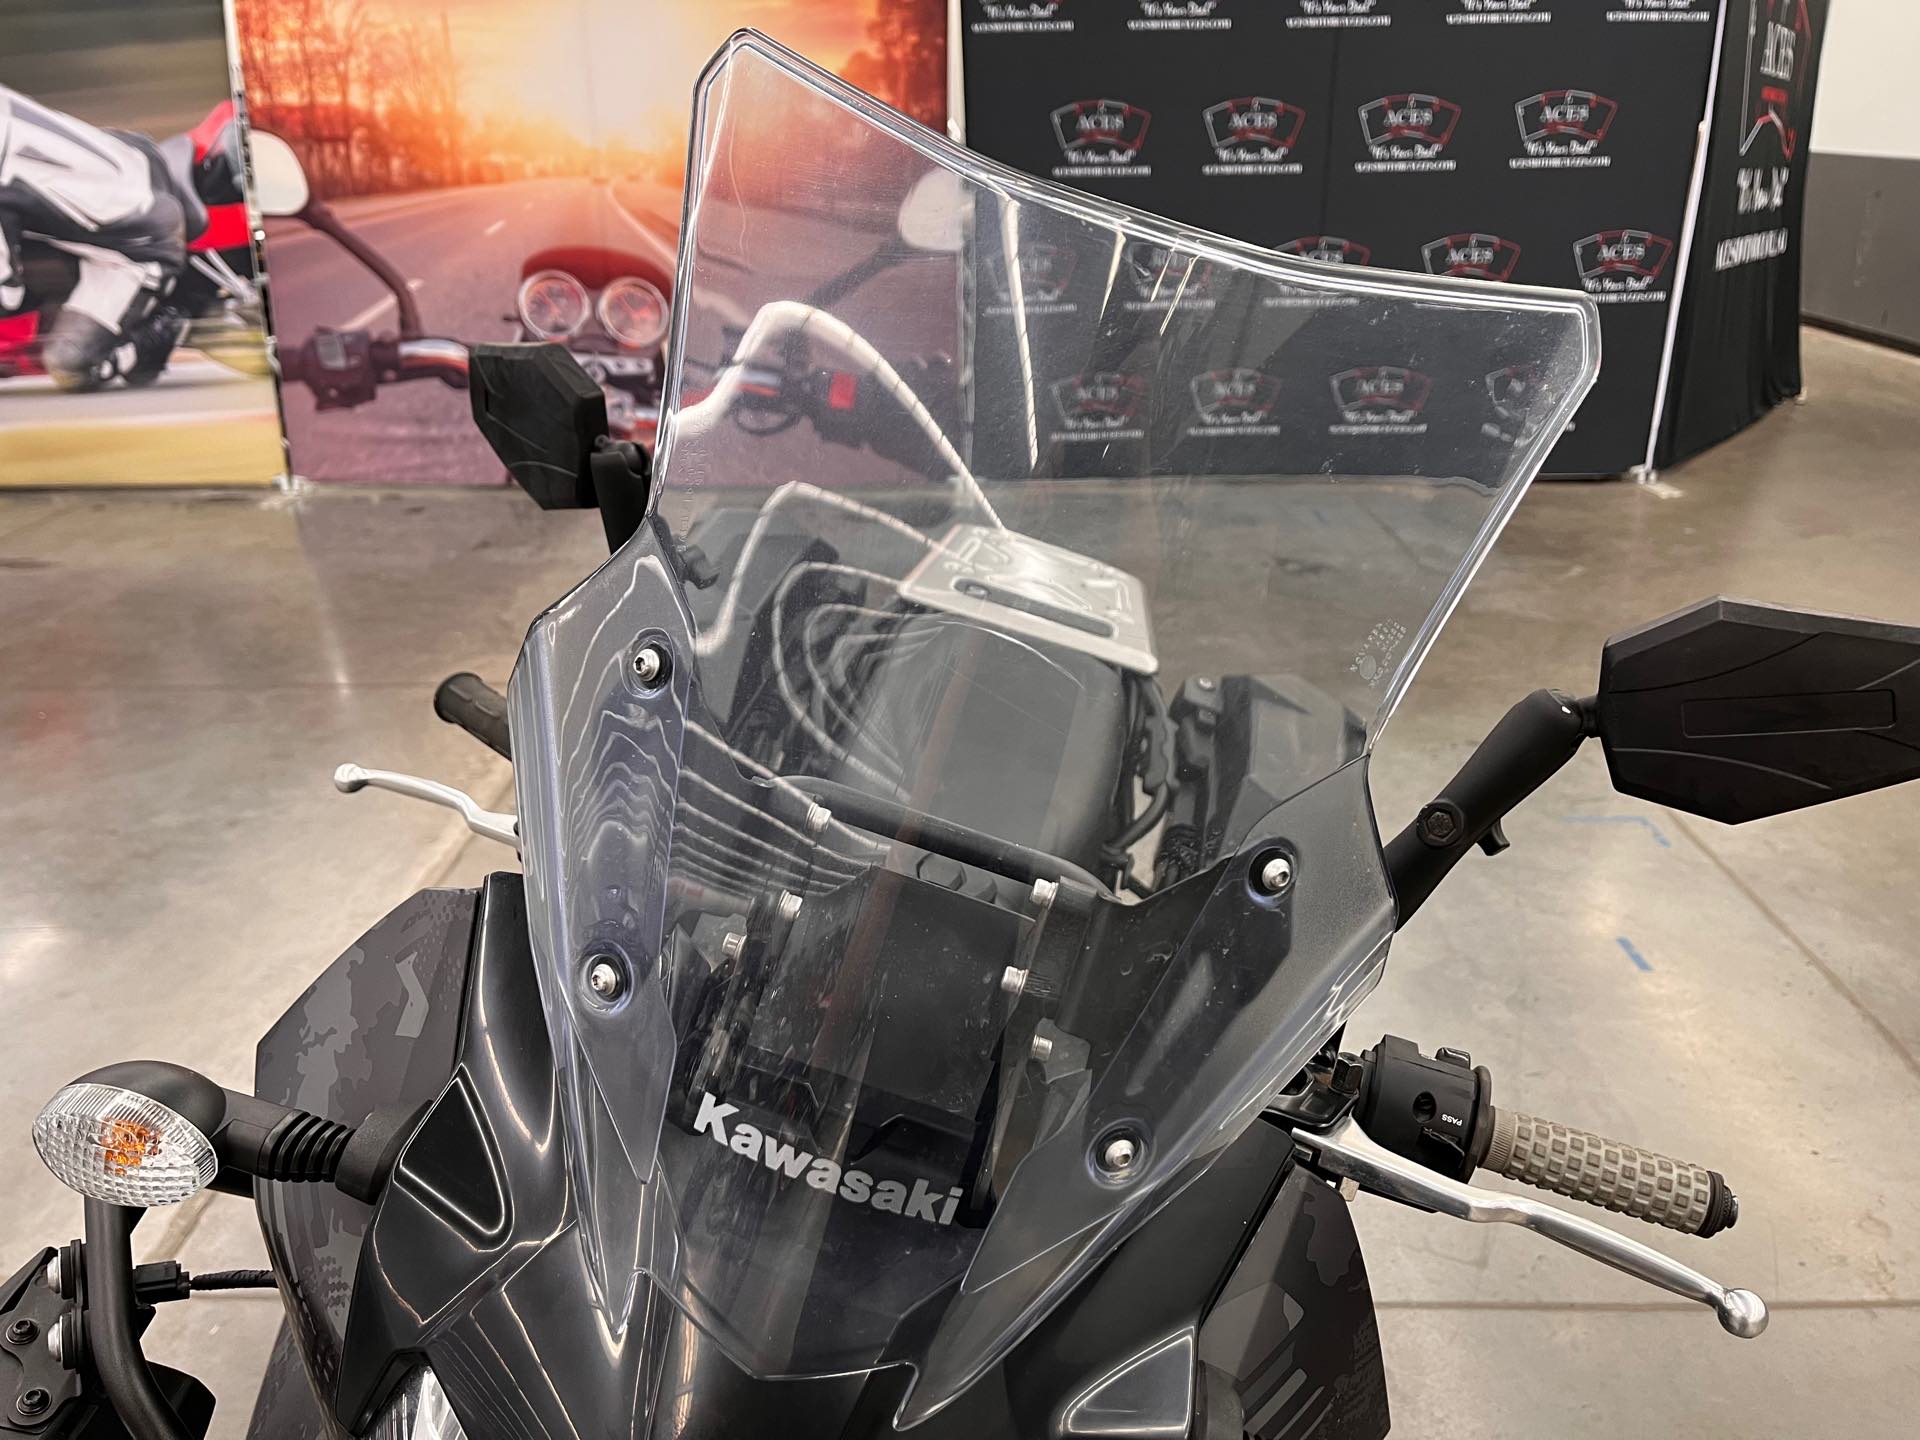 2022 Kawasaki KLR 650 Adventure at Aces Motorcycles - Denver